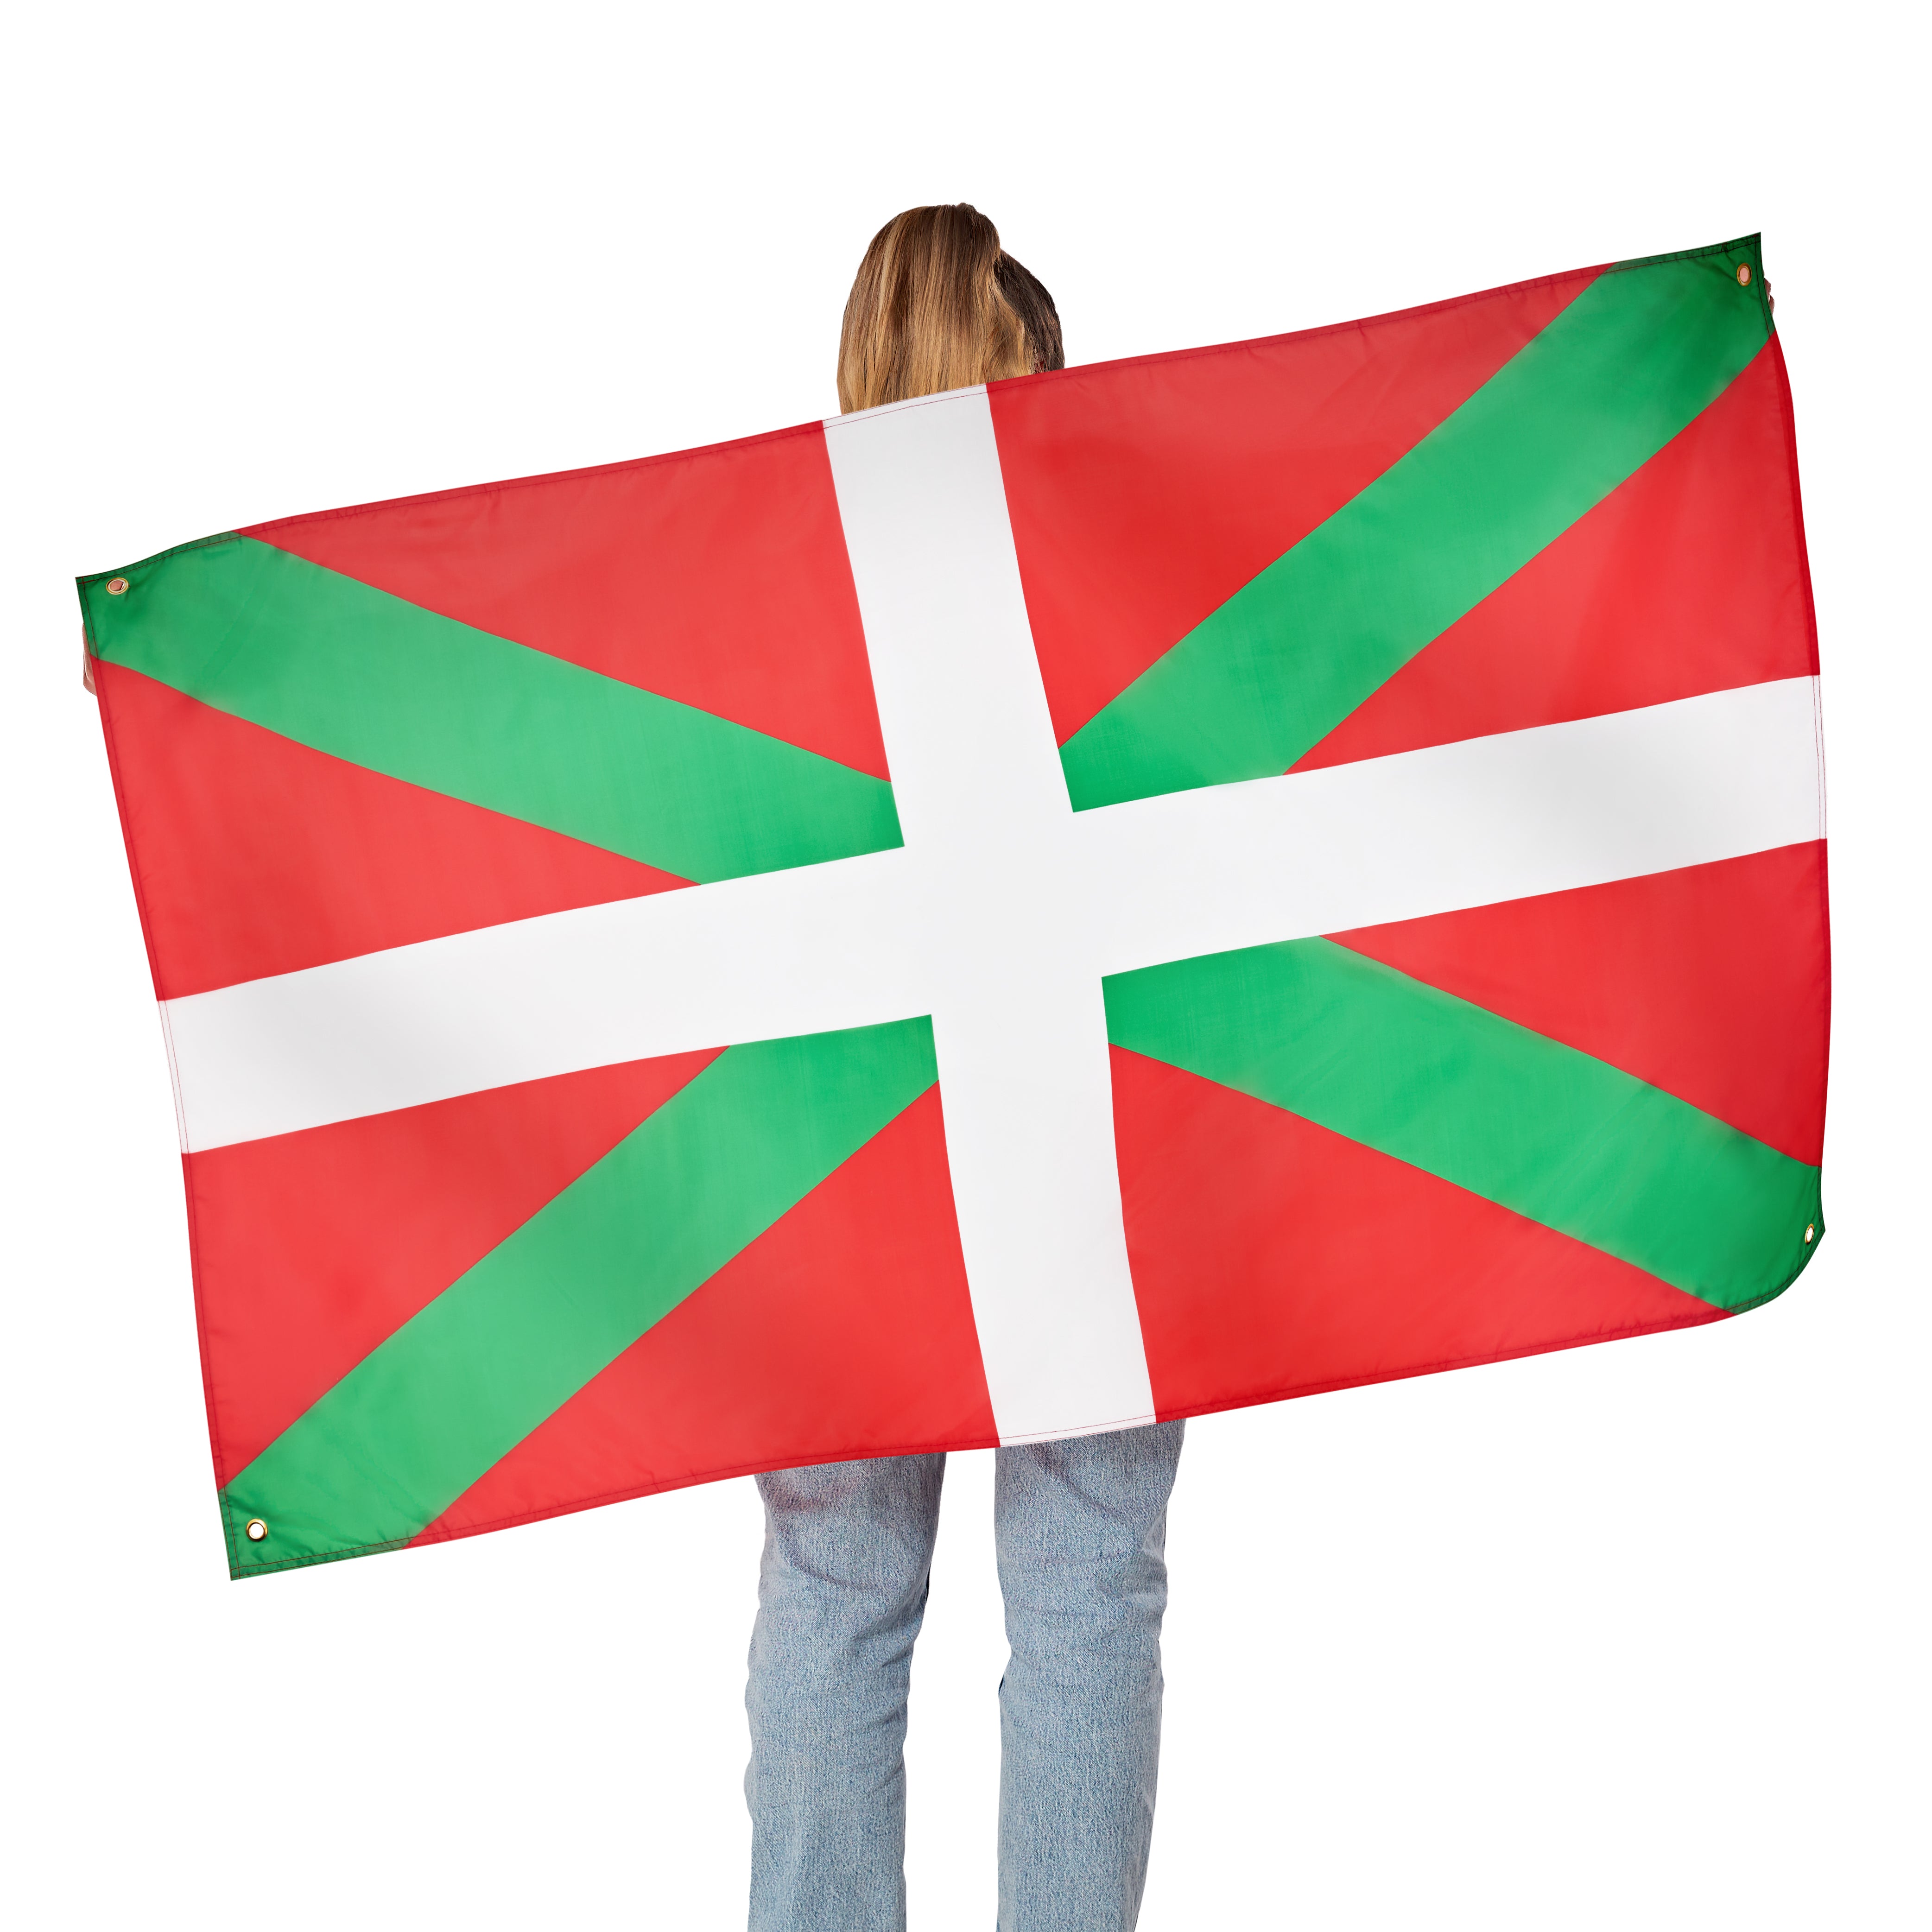 RuneSol Premium Large 5x3ft SPANISH REGIONAL Flags